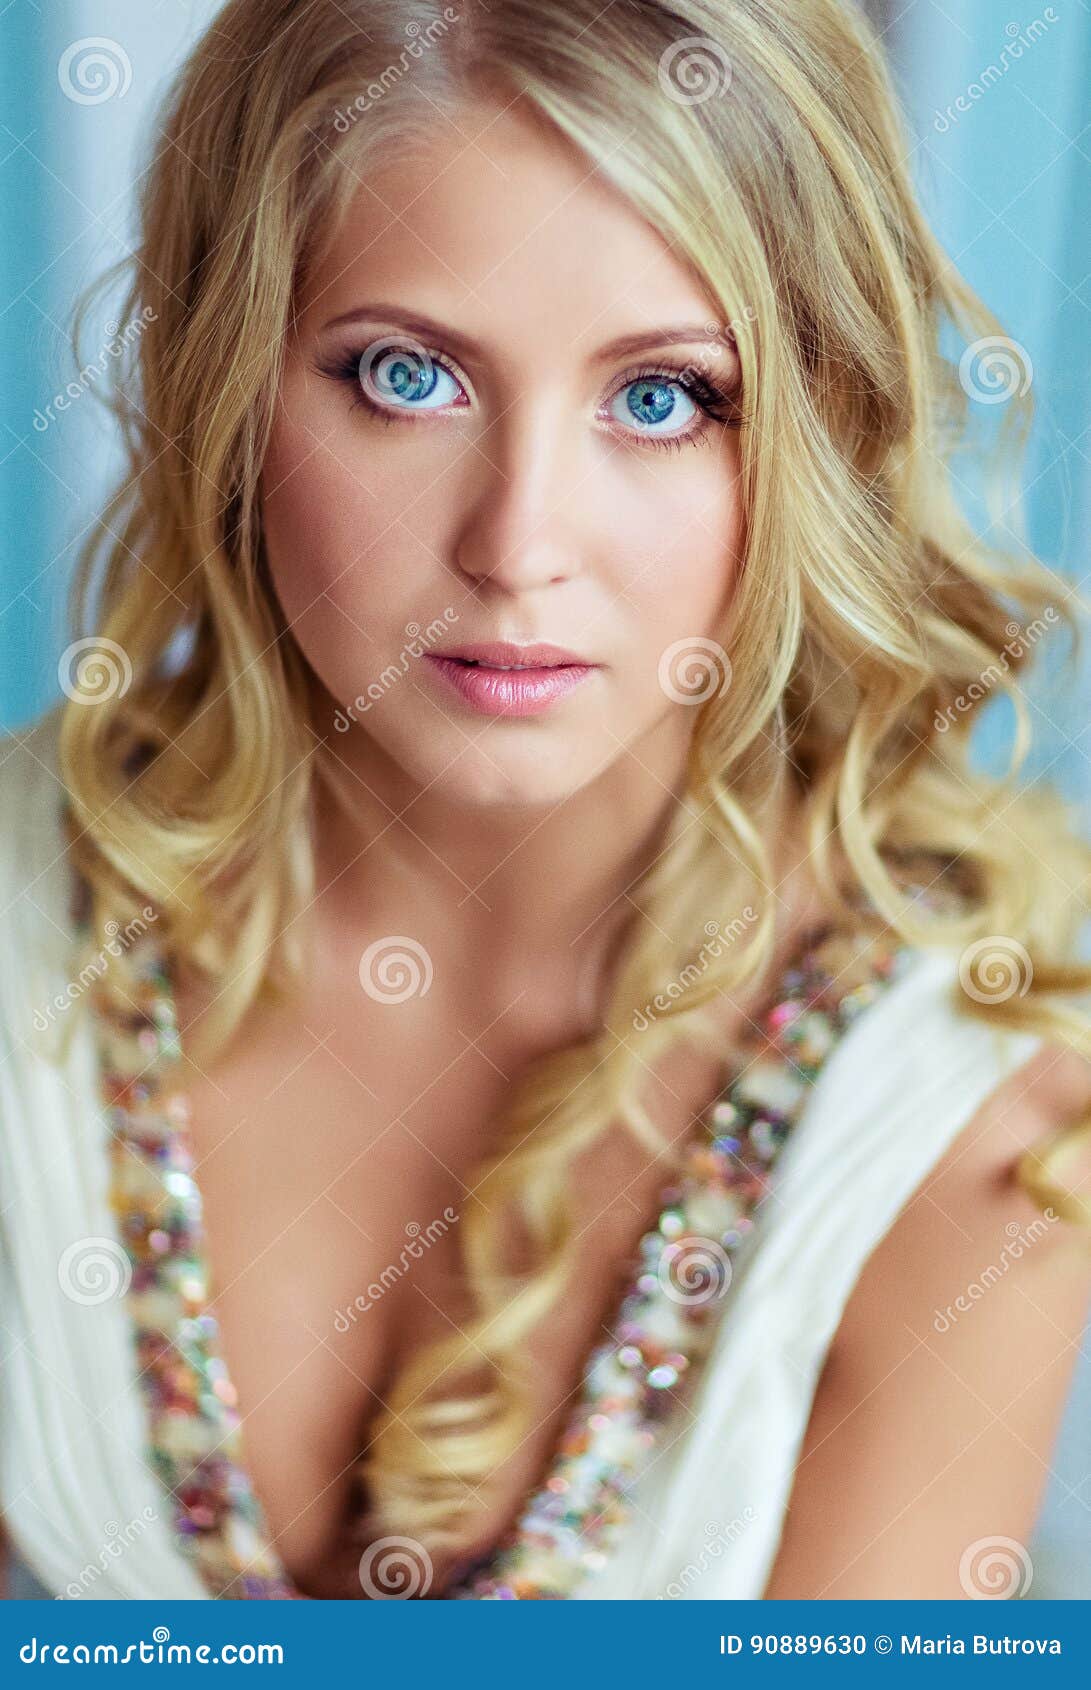 Augen blaue braun haare weiblich blonde Blonde haare